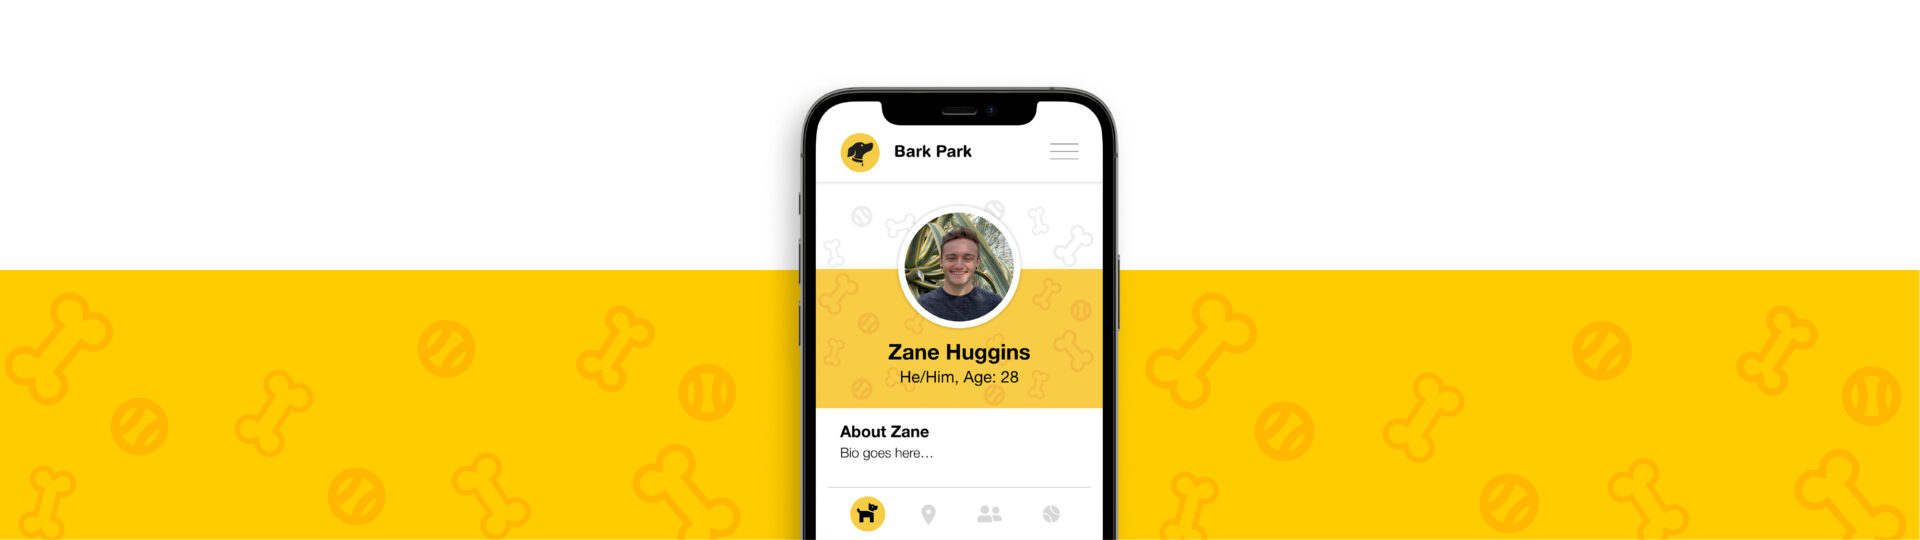 Bark Park app mocked up on an iPhone